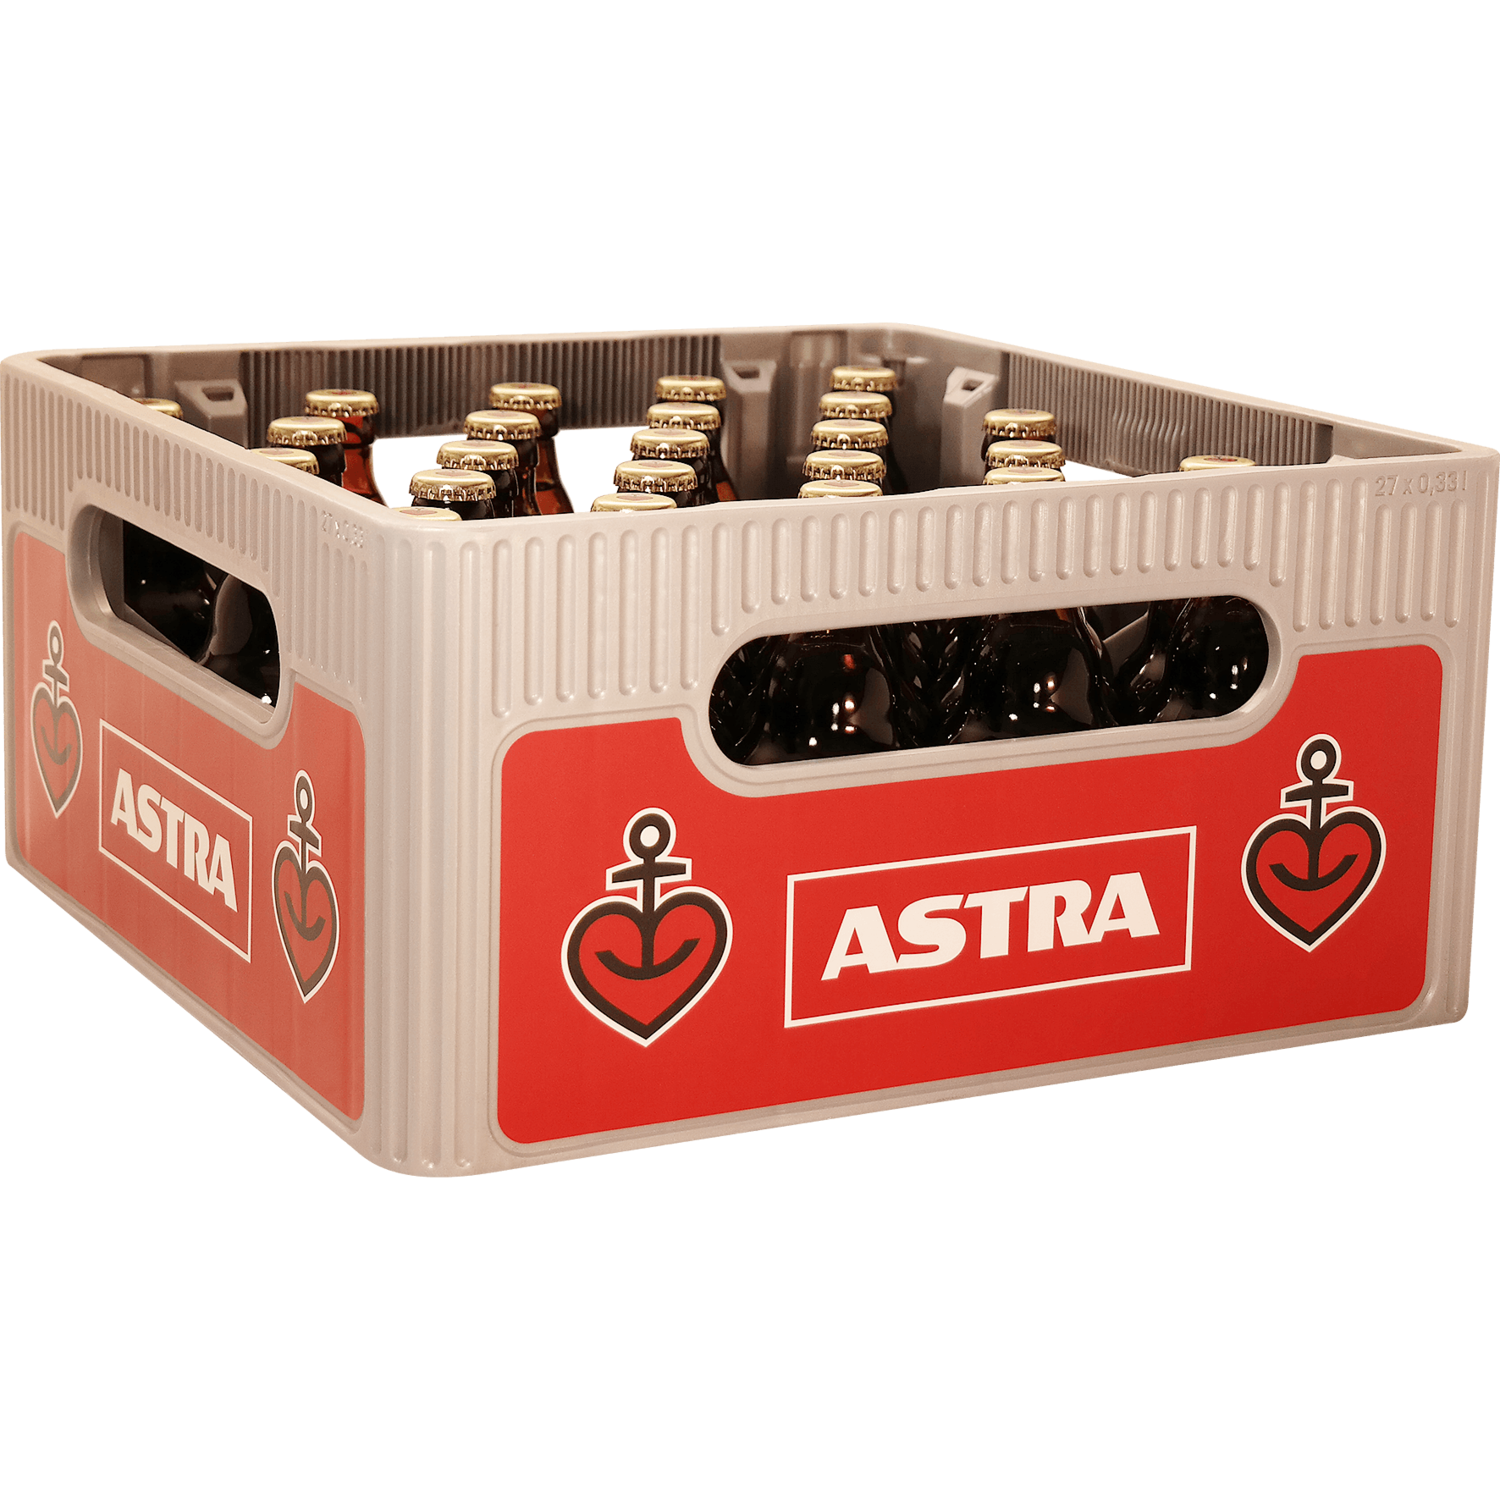 Astra Urtyp
(27x 0,33l FL Glas 16,99€ inkl. MwSt. zzgl. Pfand)